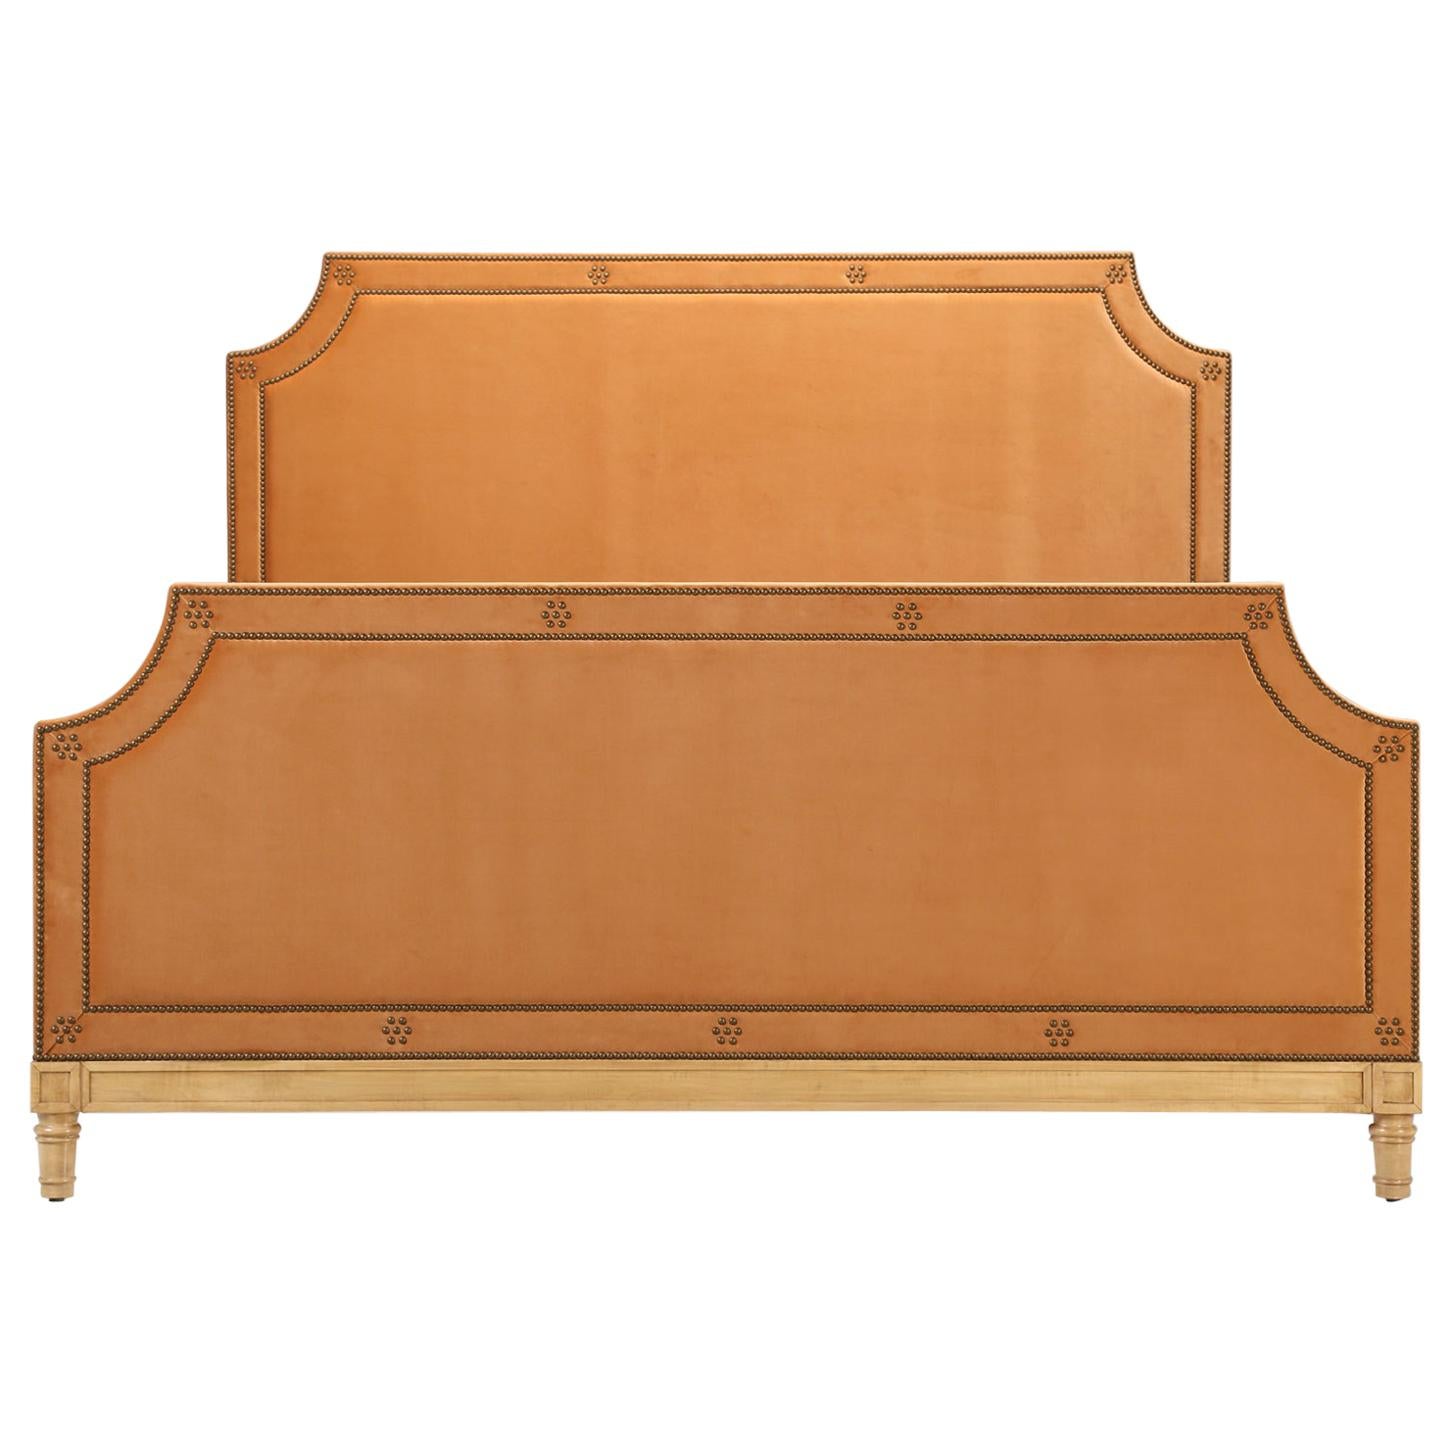 Le lit King Size de Old Plank, fabriqué sur commande, est disponible dans toutes les tailles et tailles (taille FR 54)